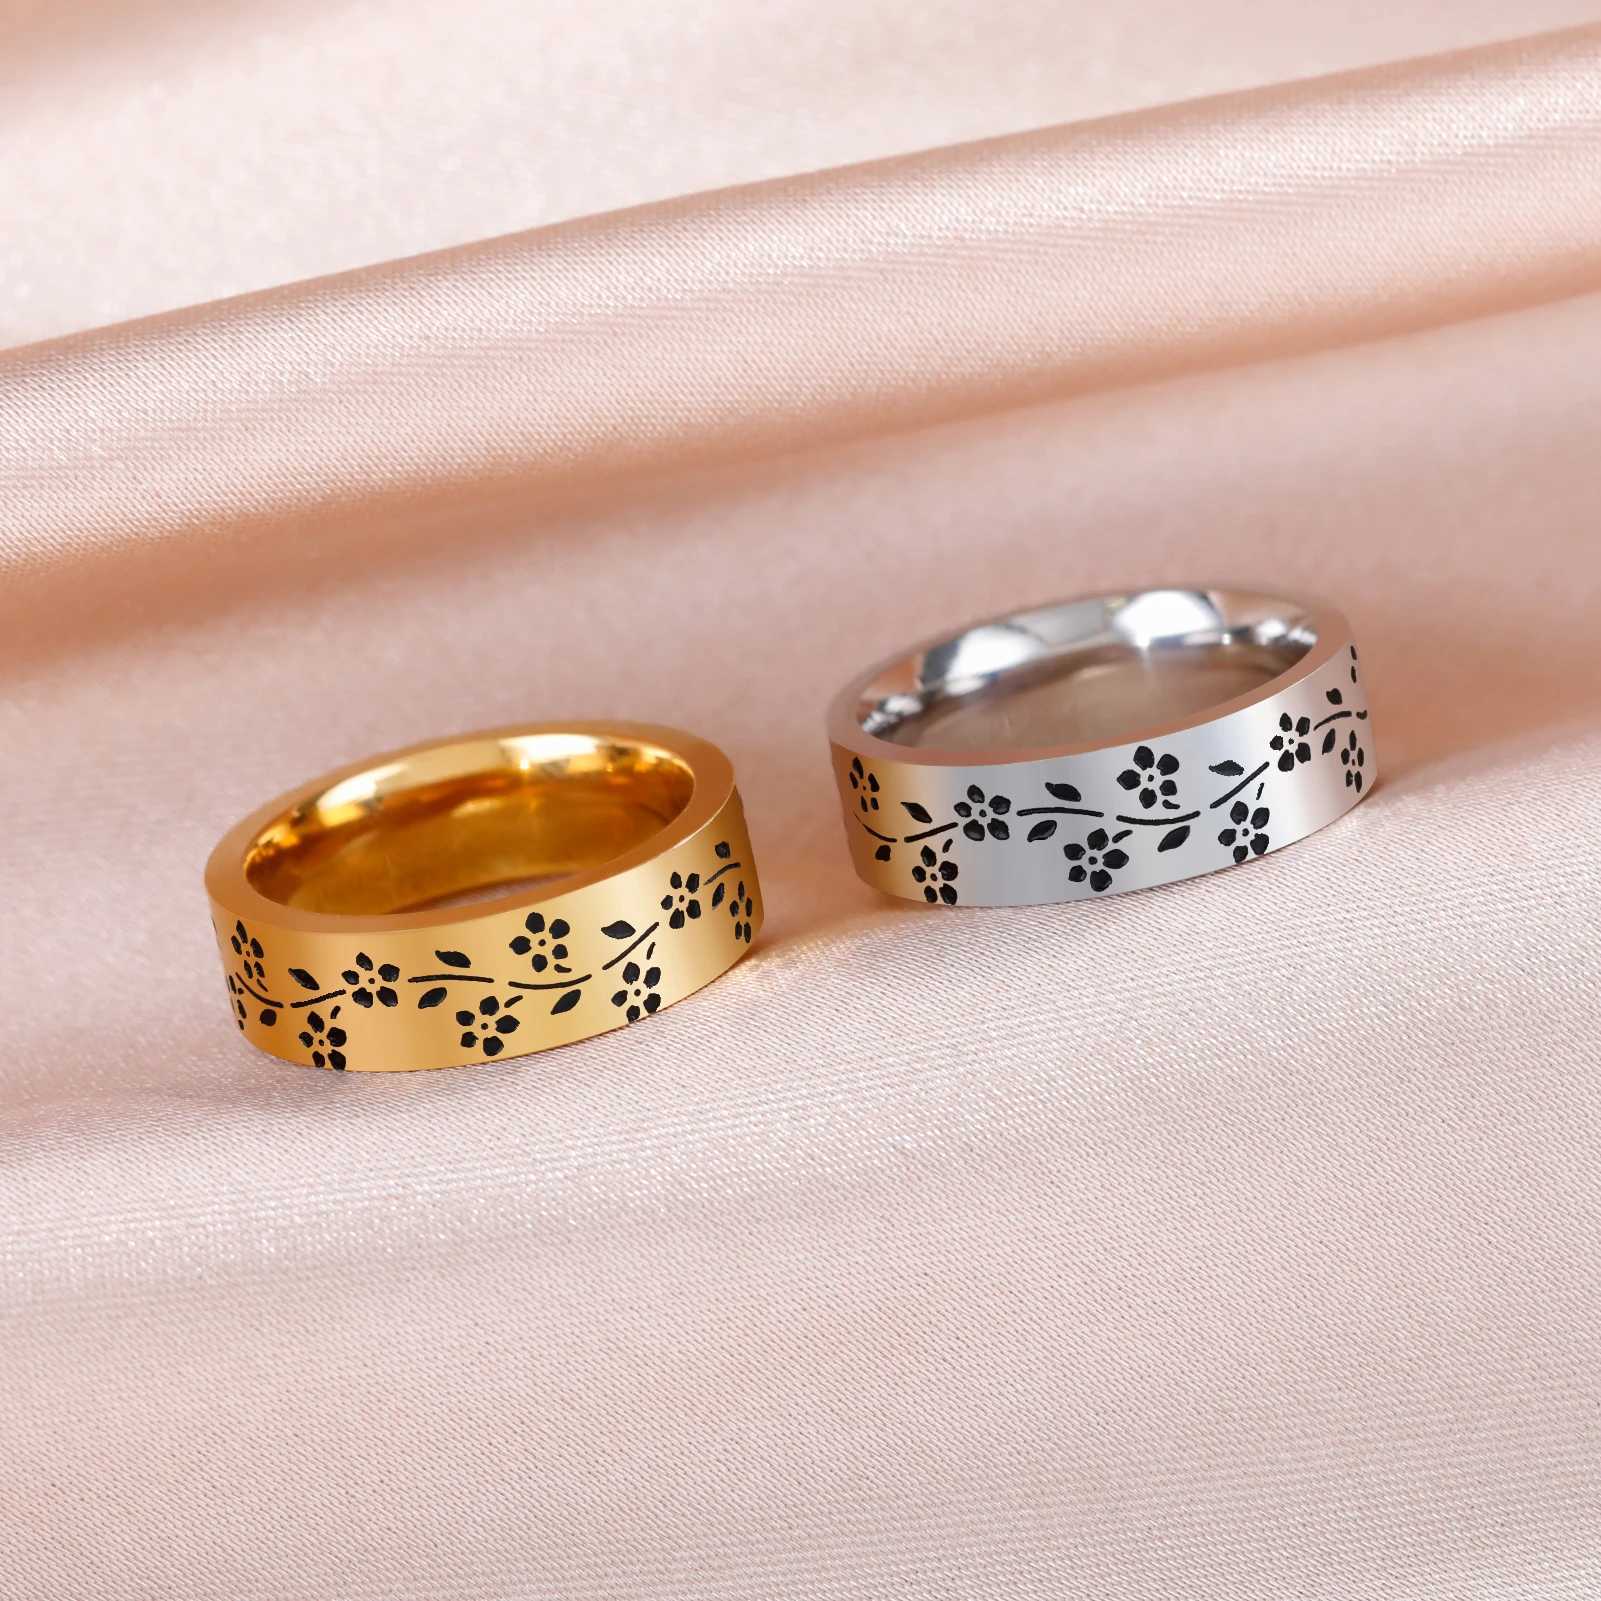 Bröllopsringar skyrim rostfritt stål blomma graverad ring för kvinnor män 6mm breda casual fingerringar mode smycken bröllop gåva för älskare